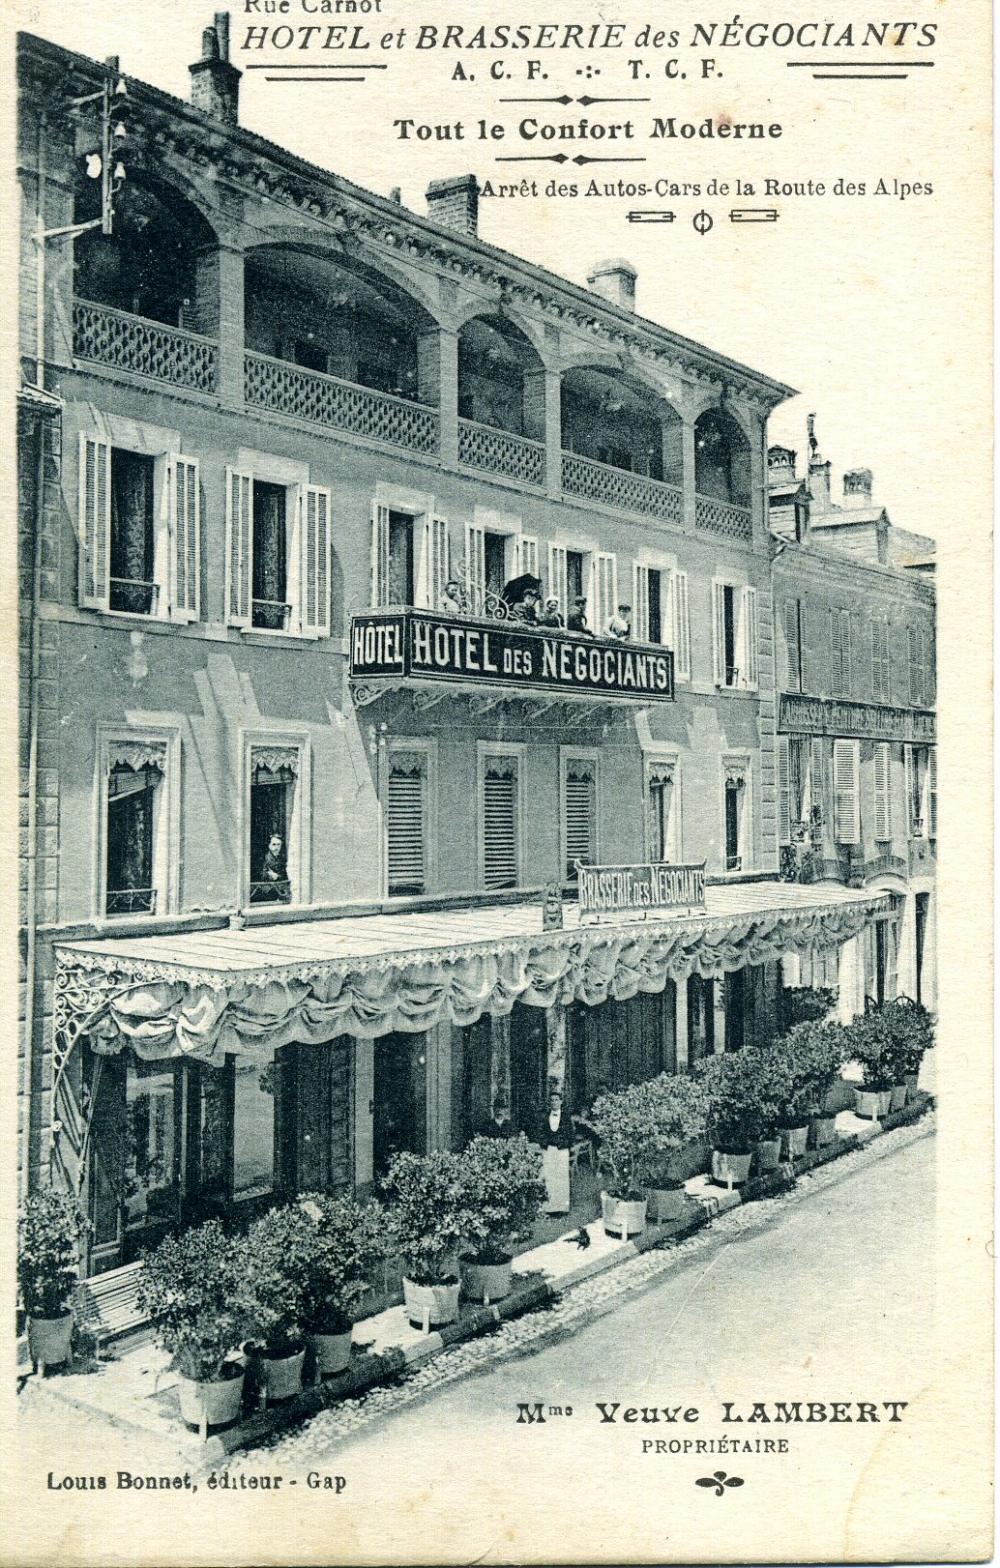 Gap - Rue Carnot - Hôtel et Brasserie des Négociants - Mme Veuve Lambert propriétaire